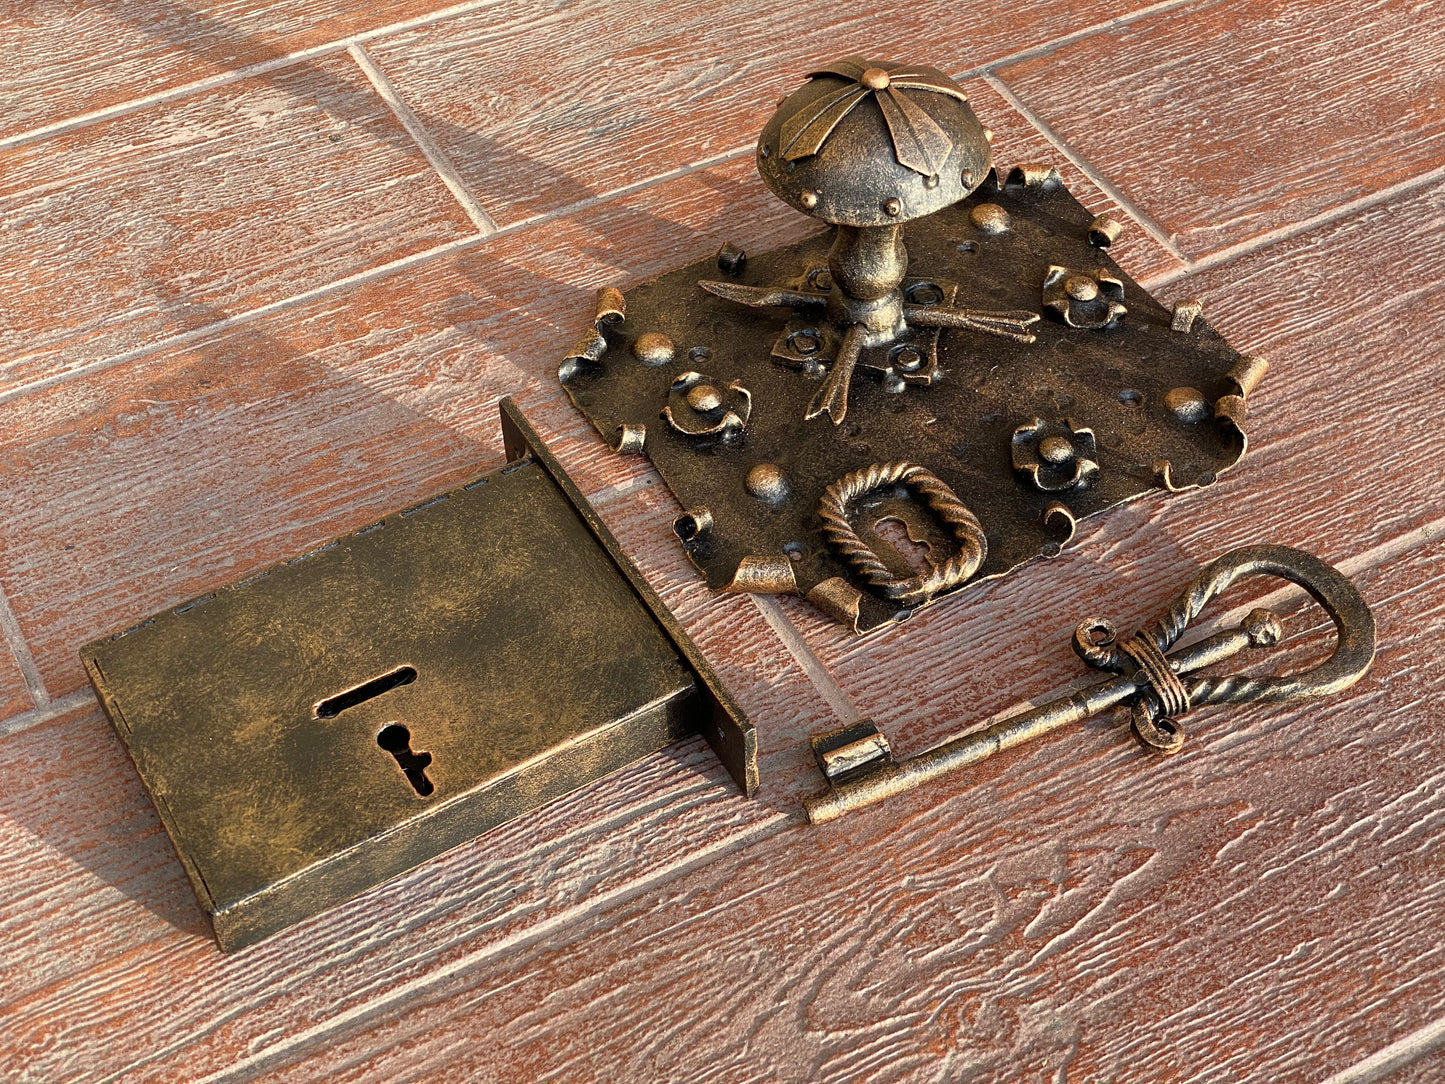 Medieval lock, key, door pull, medieval, door hardware, antique door, door handle, lock, door pull, blacksmith, vintage decor, retro,antique